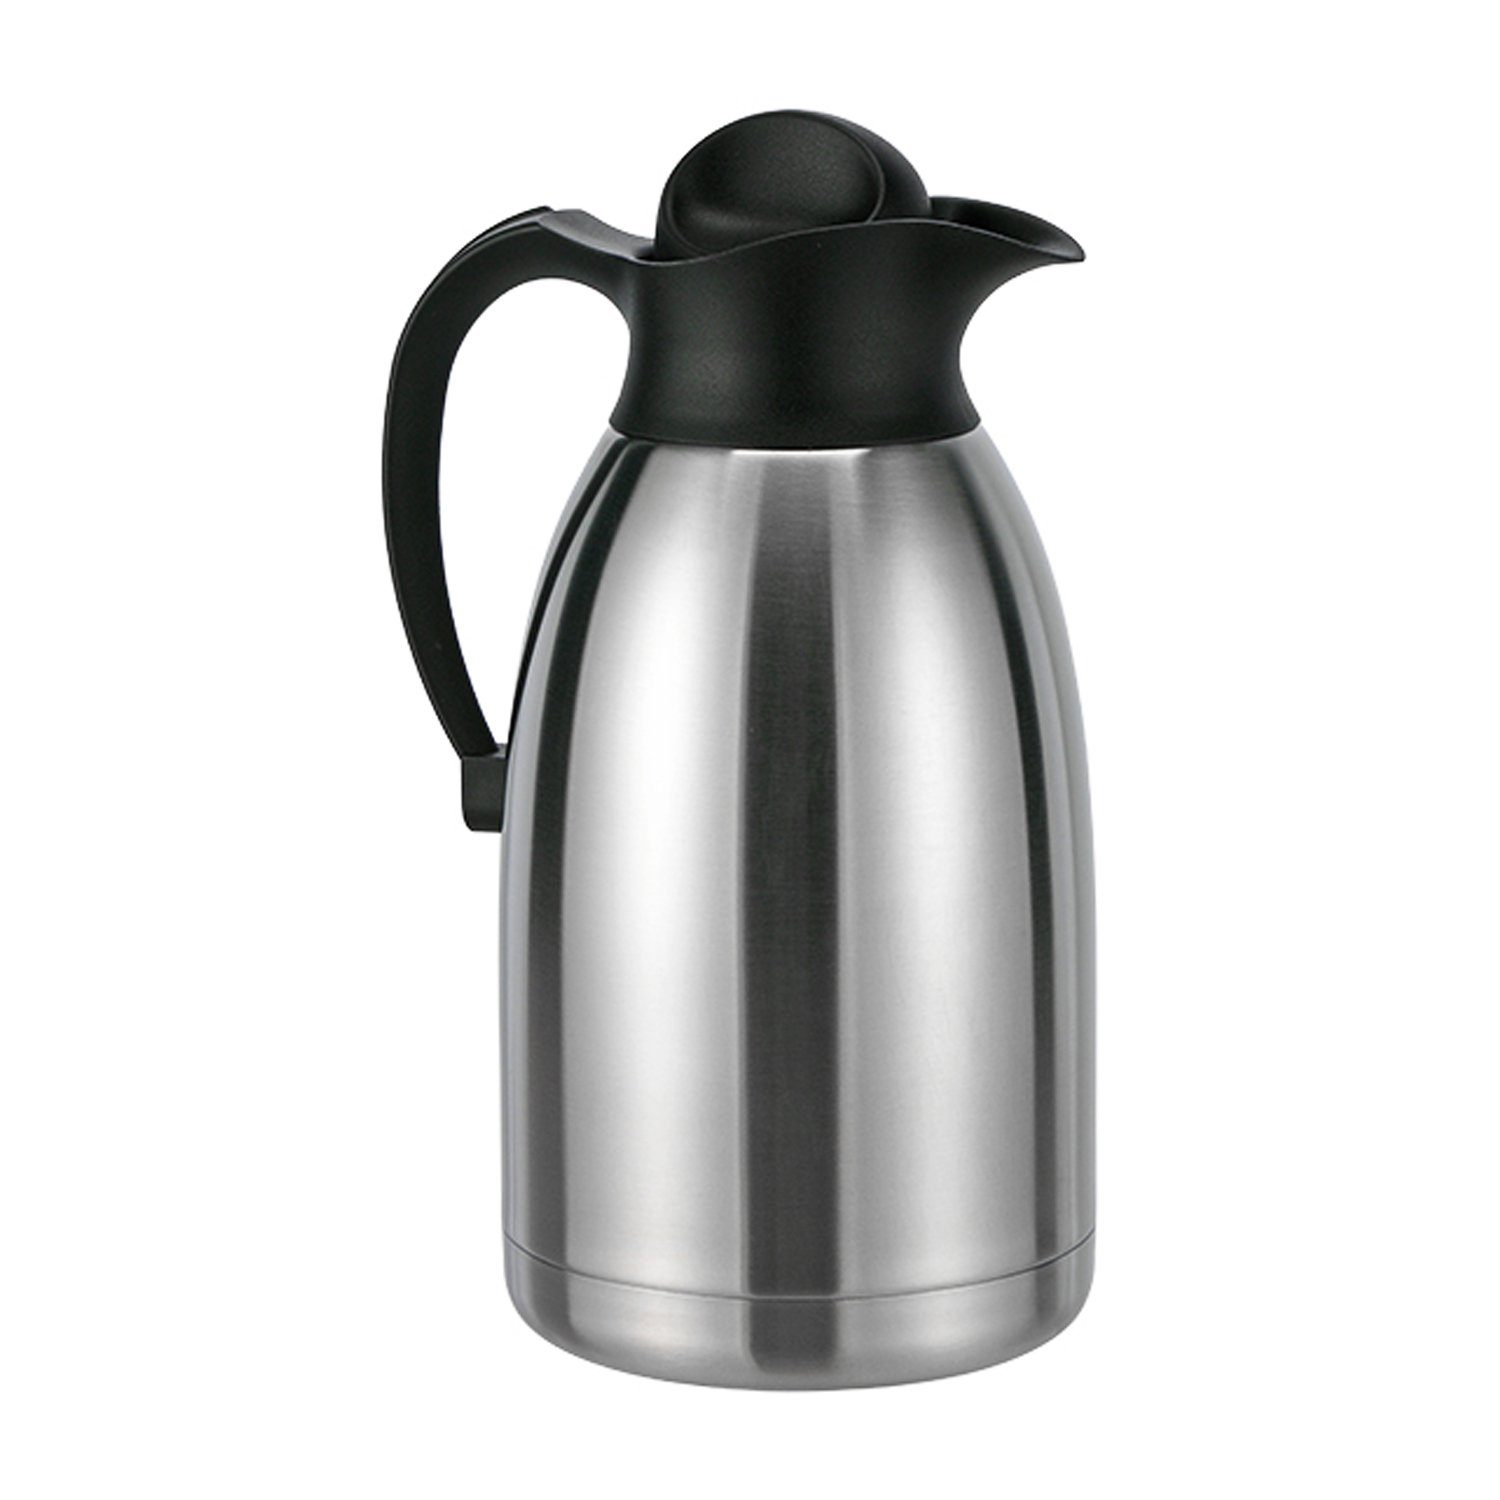 Mojawo Thermobehälter 2 Liter Thermoskanne Kaffeekanne Edelstahl Isolierkanne Doppelwandig